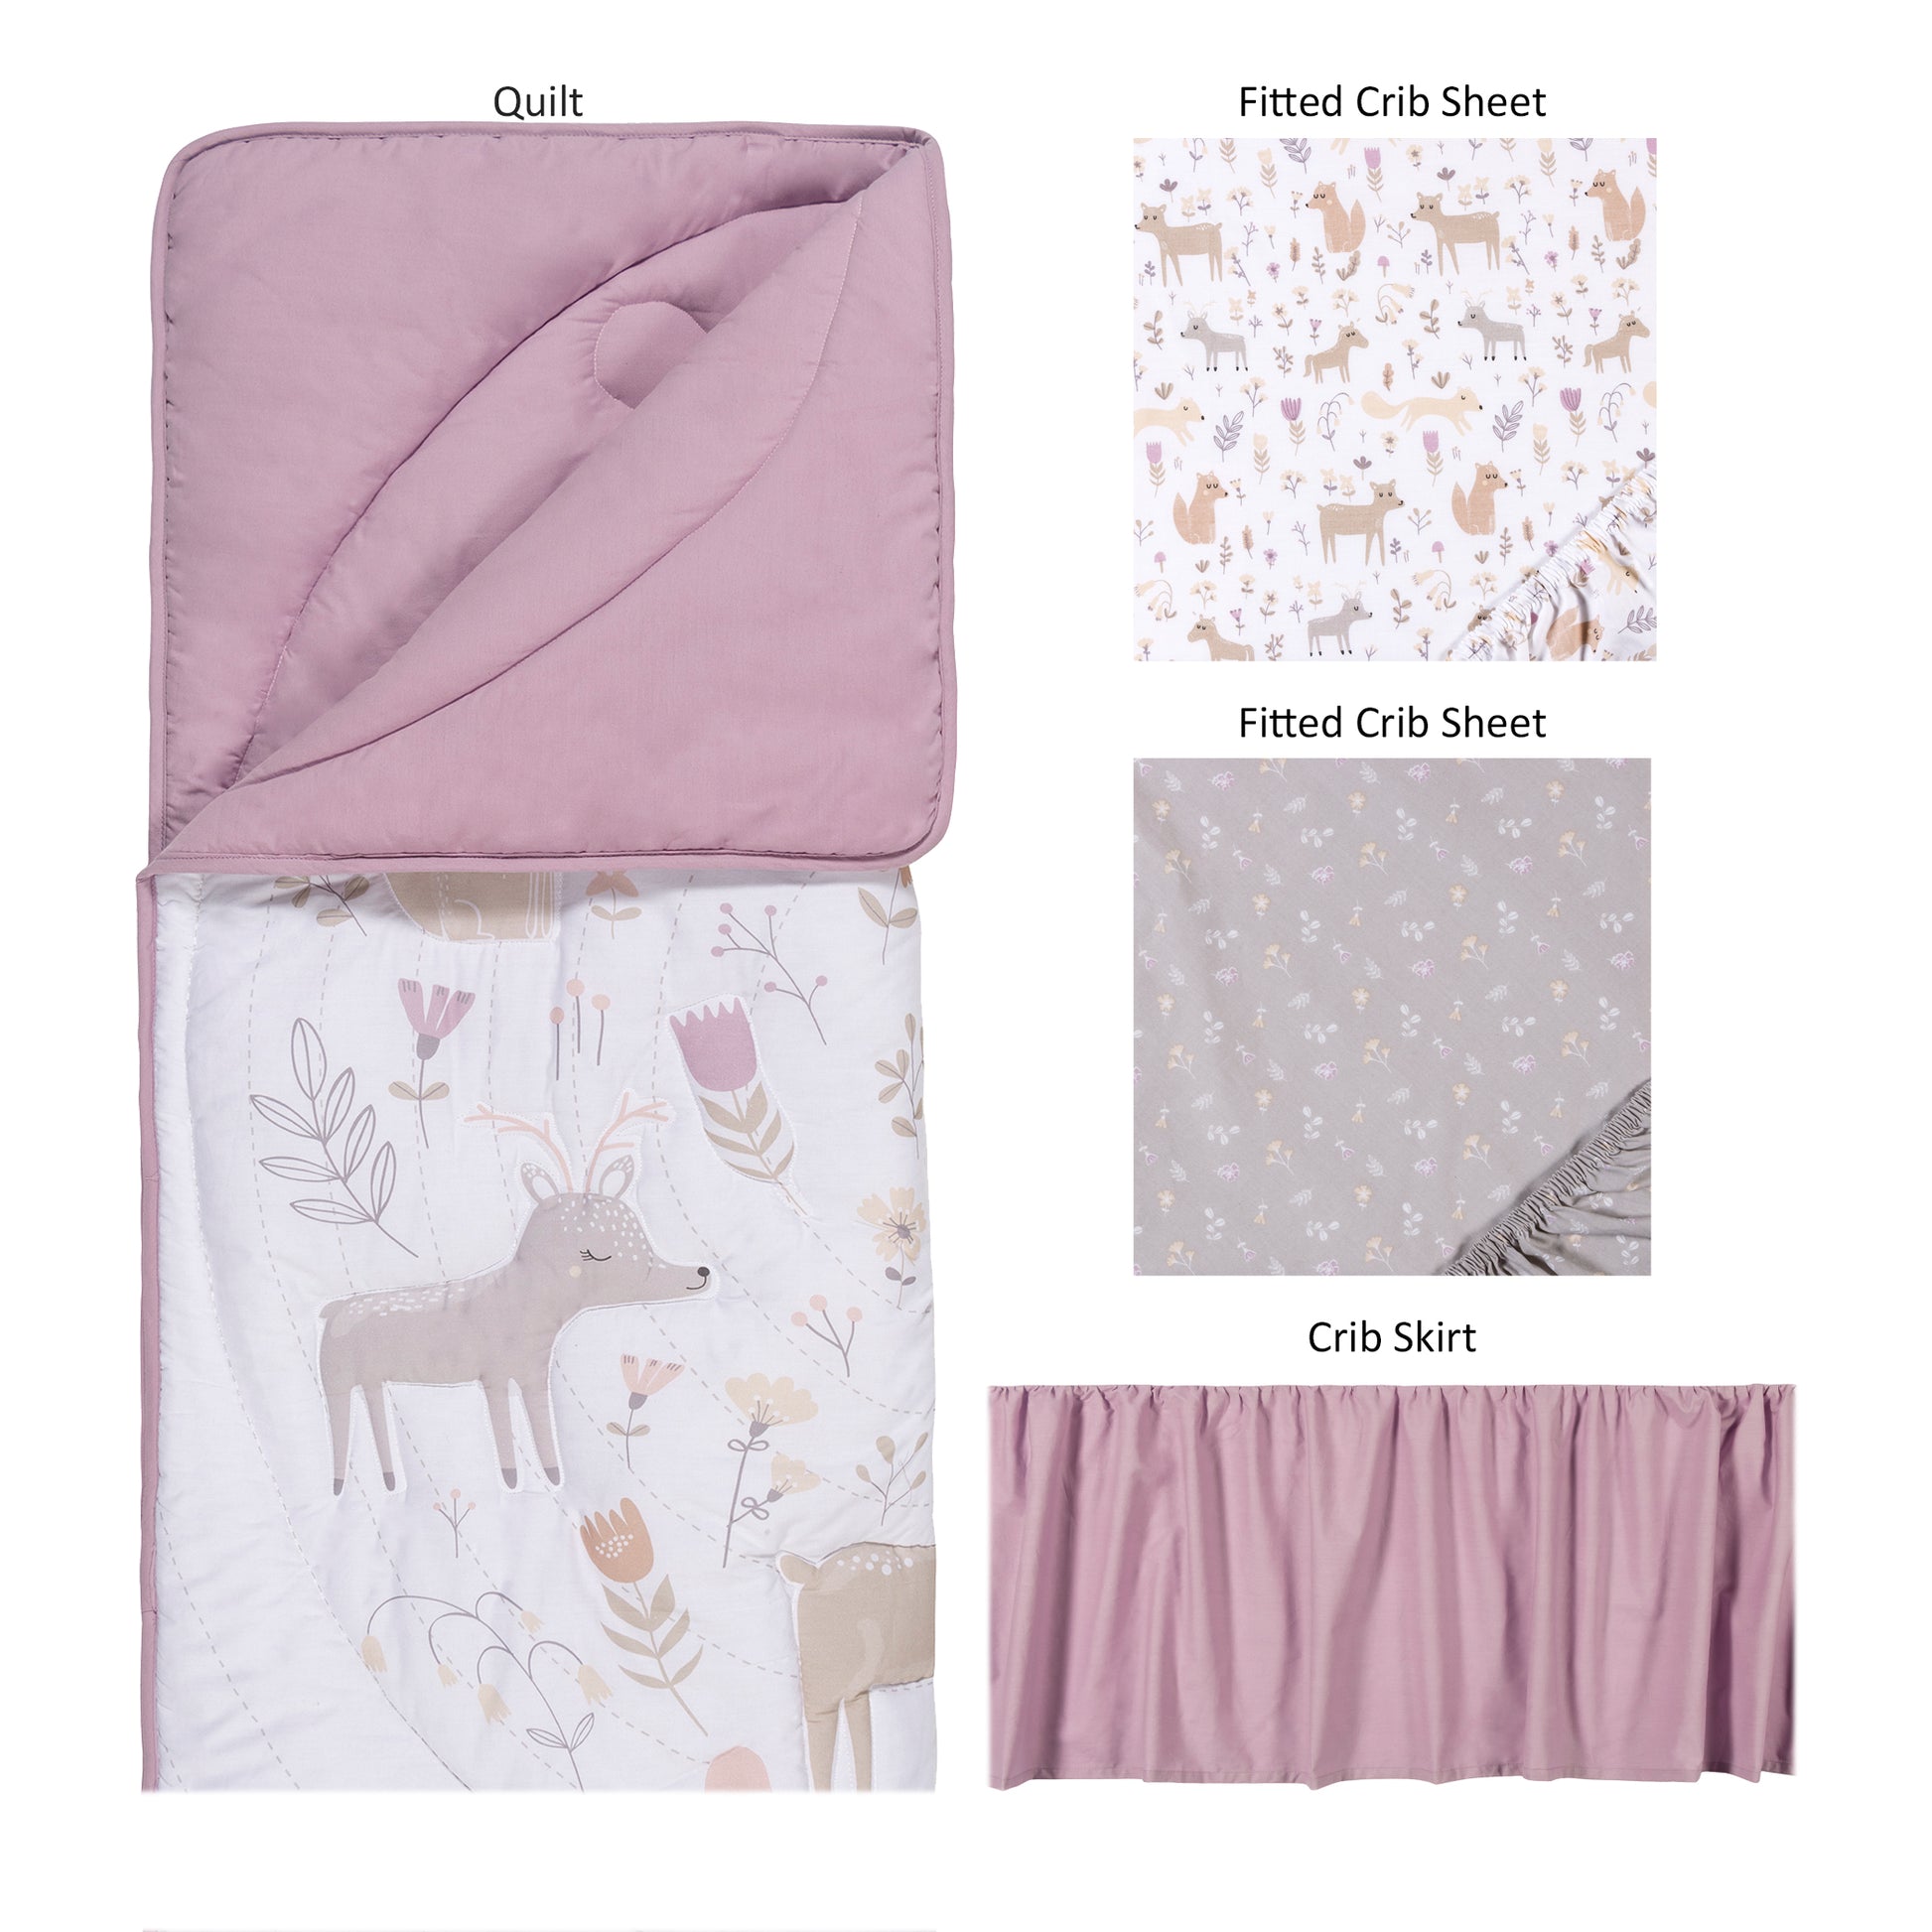  Forest Garden 4 Piece Crib Bedding Set; nursery quilt, crib sheet, crib sheet, crib skirt